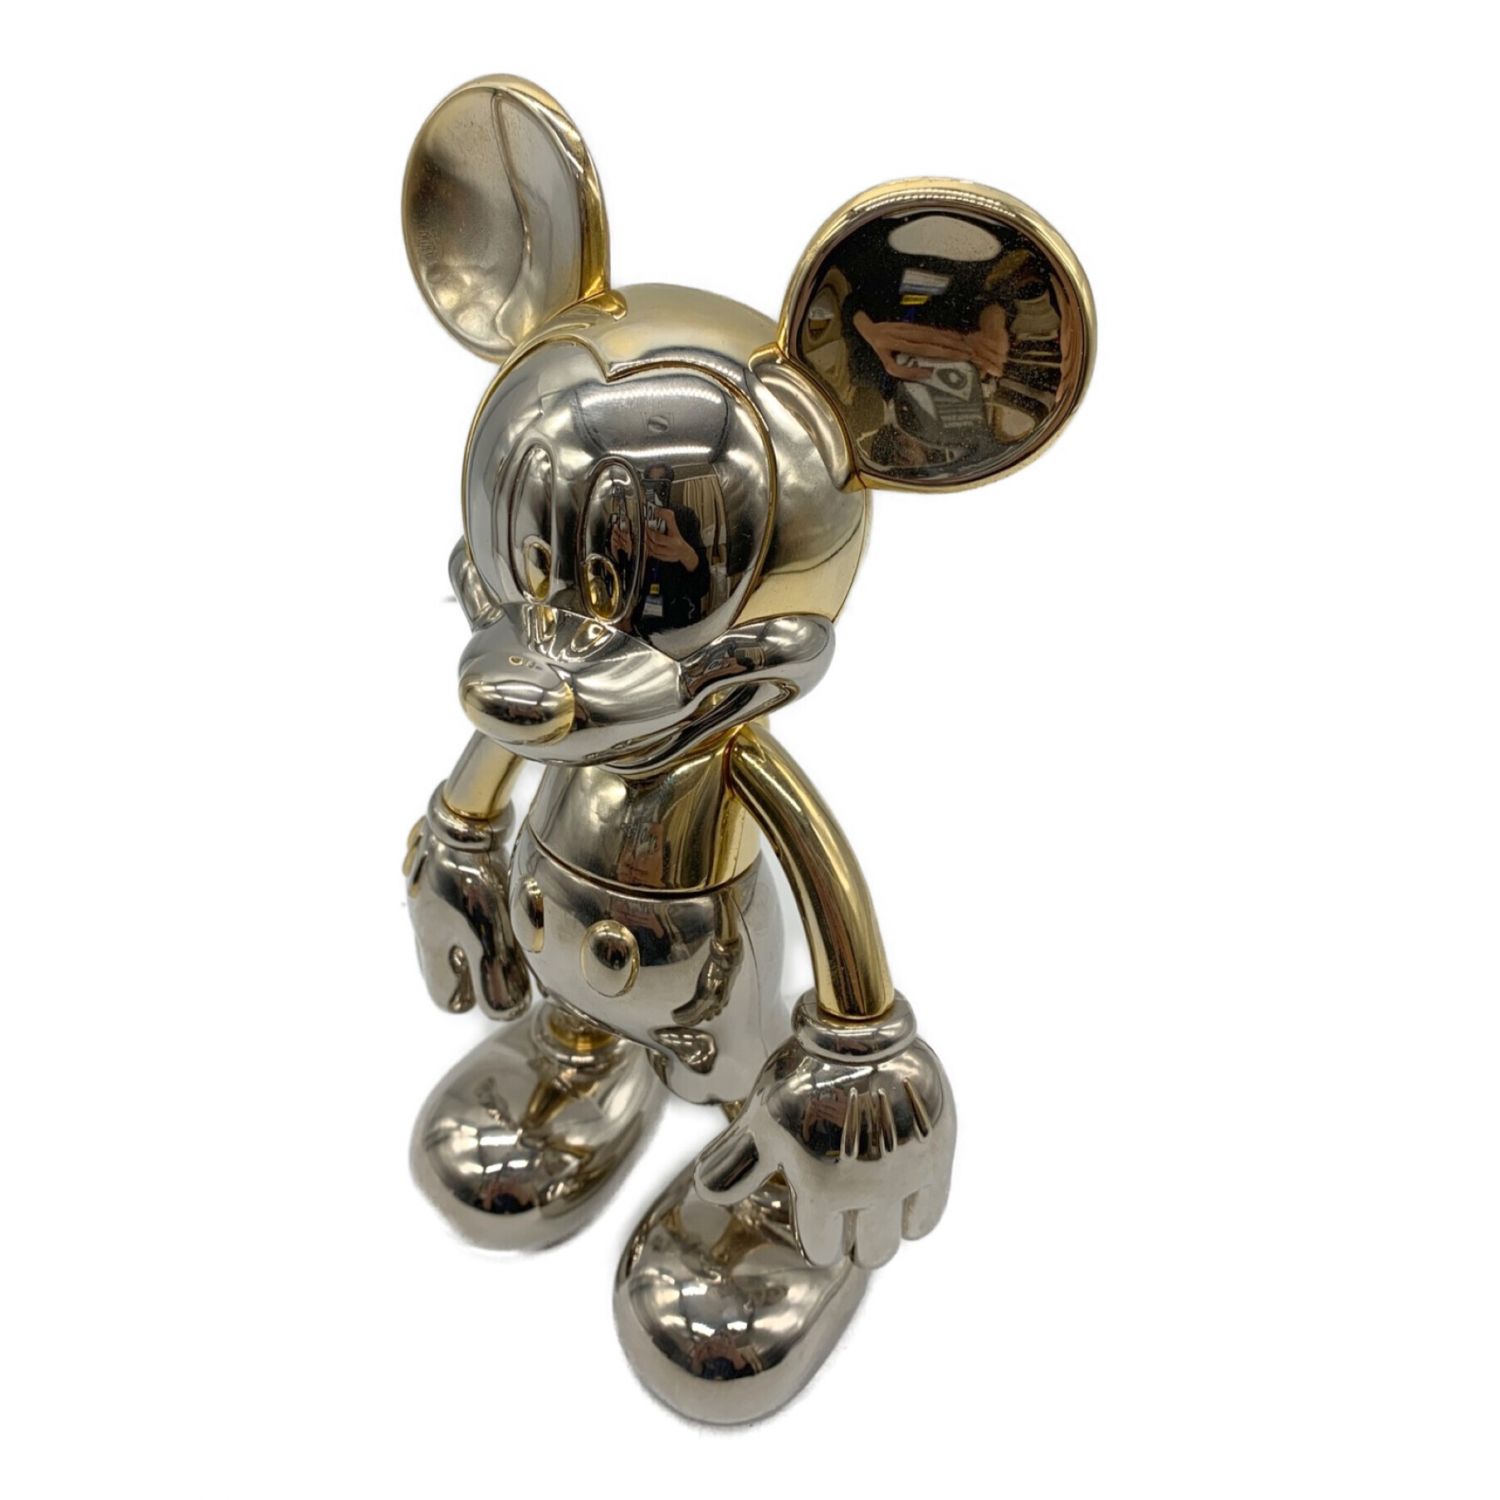 SALE／103%OFF】 Disney ディズニー ミッキーマウス メタルフィギュア